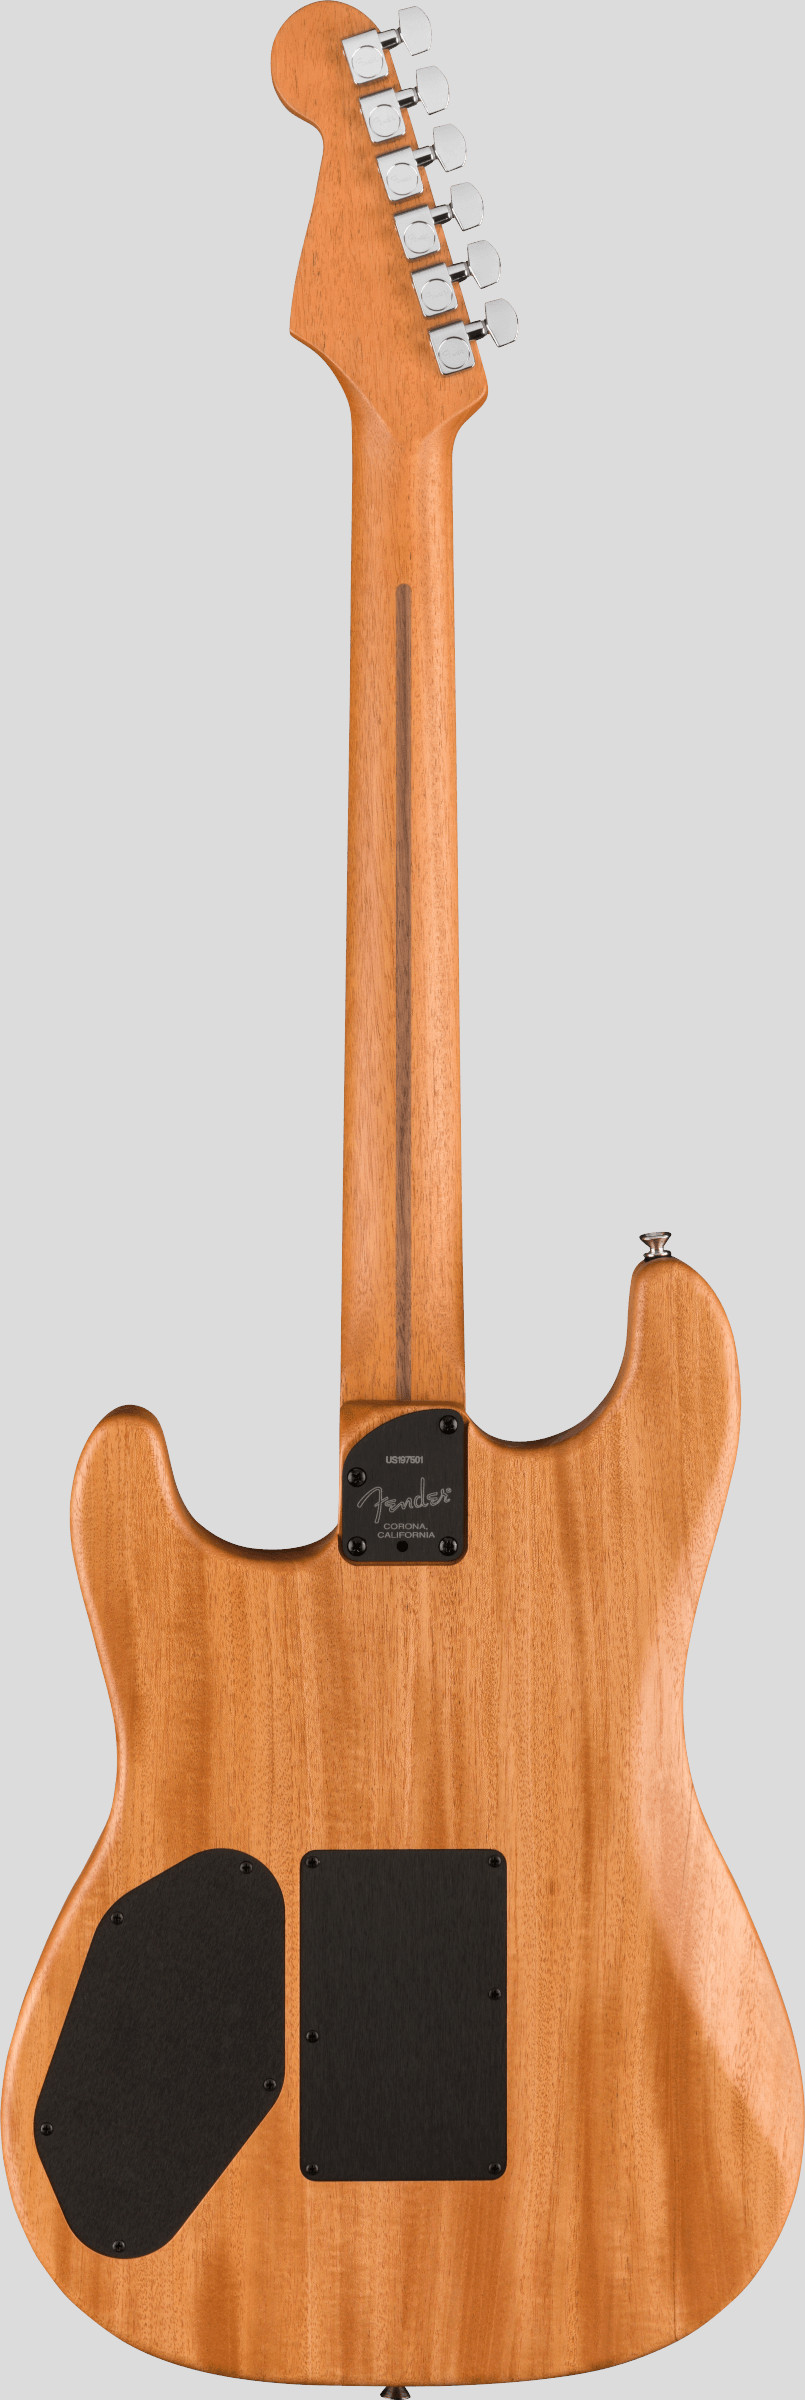 Fender American Acoustasonic Stratocaster Dakota Red 2